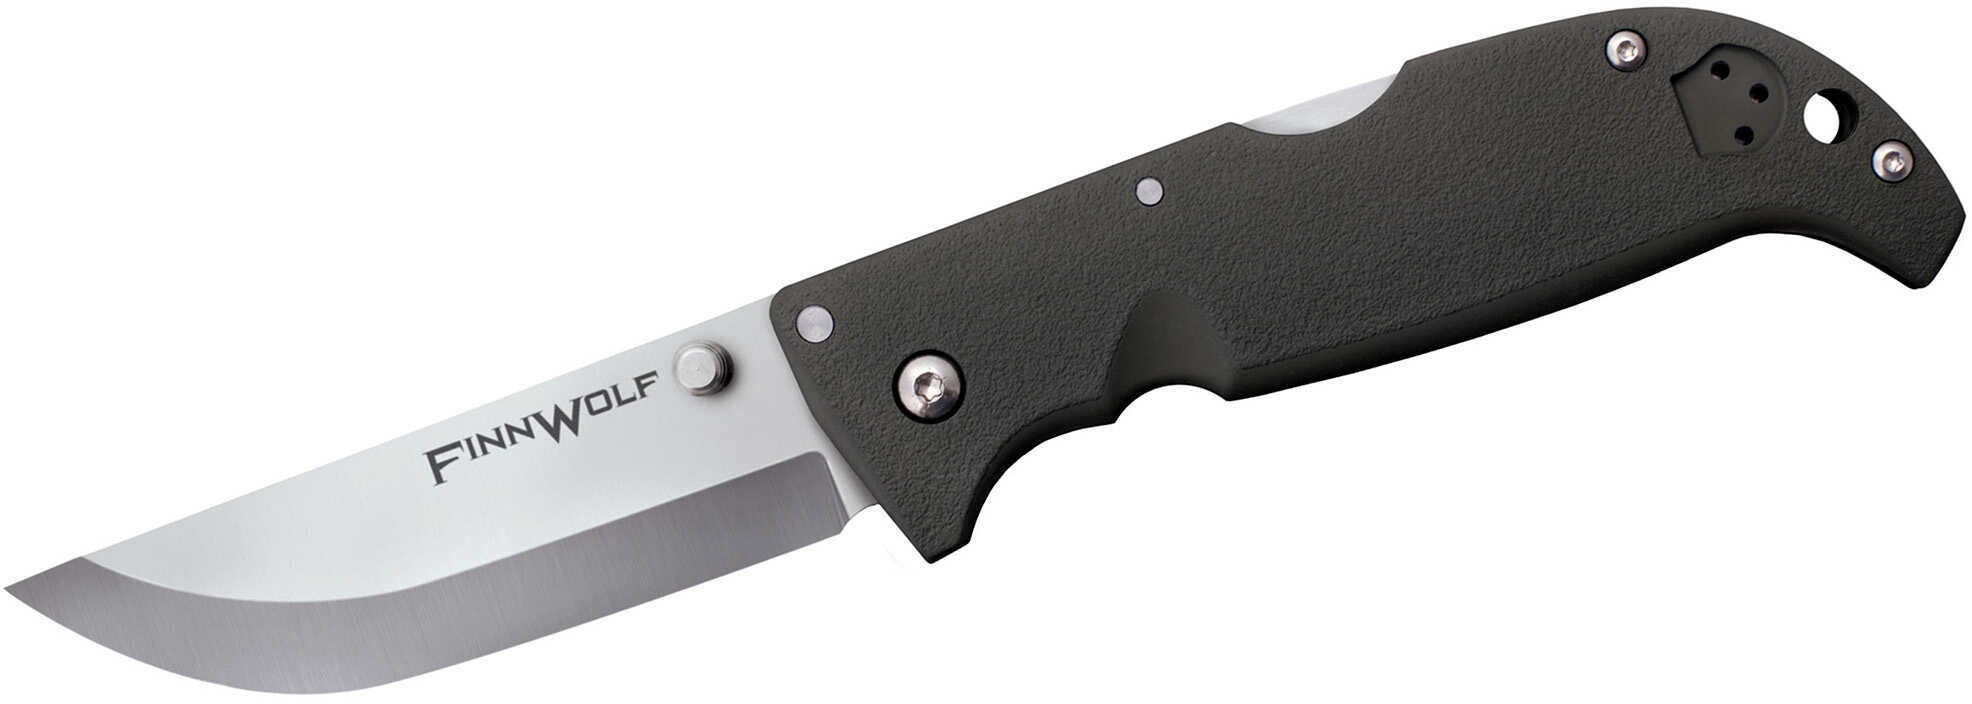 Cold Steel Finn Wolf Folding Knife OD Green Model: 20NPF